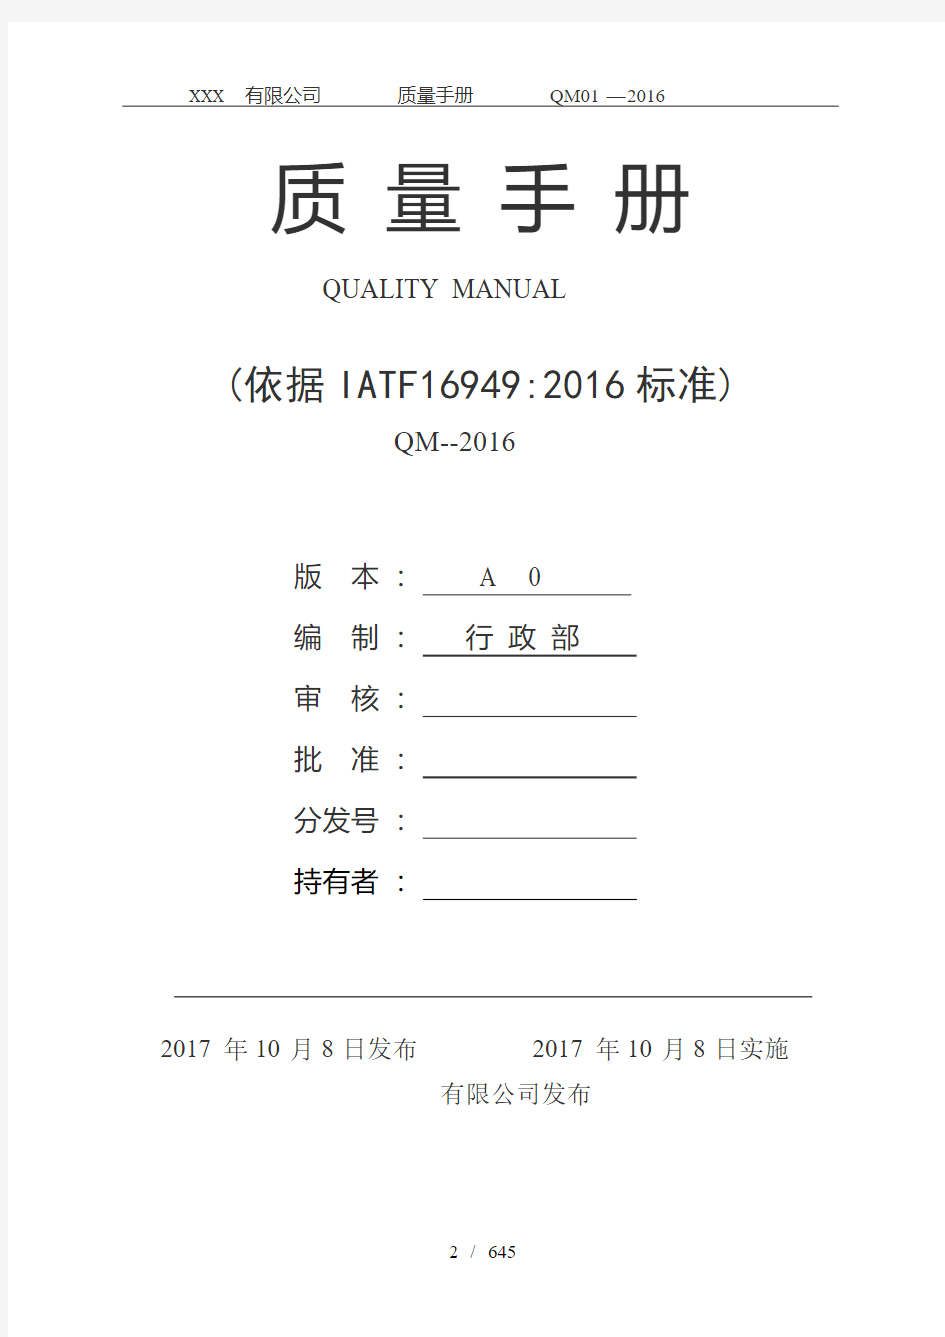 IATF16949-2016版全套质量手册程序文件及表格共635P